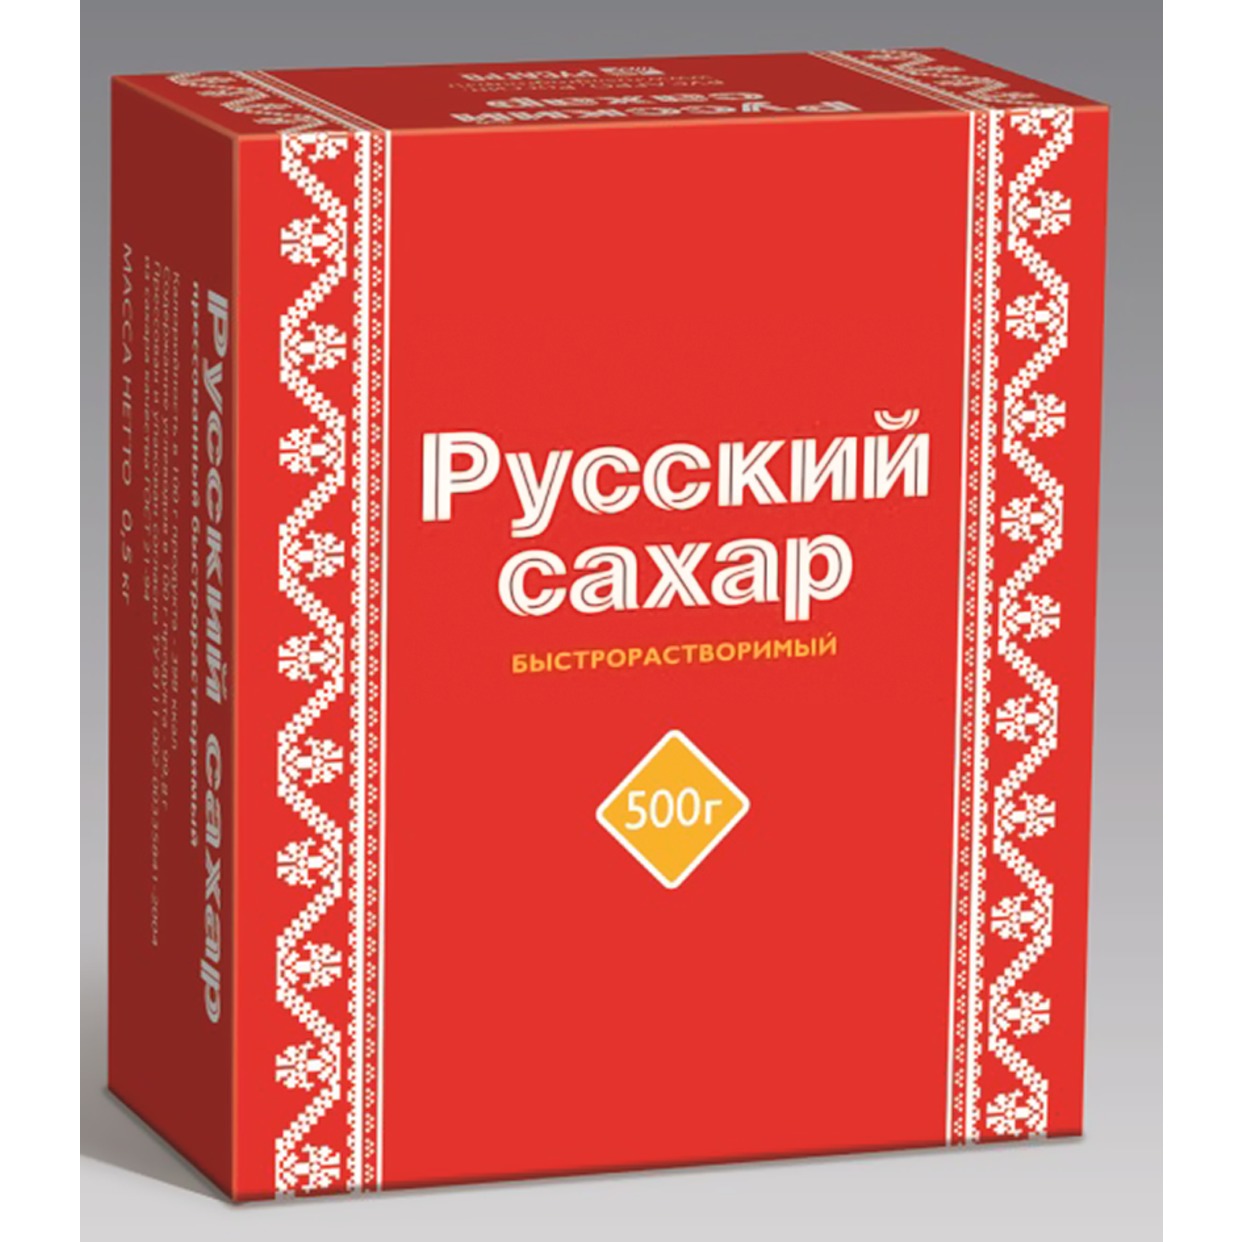 Сахар Русский, рафинад, 500 г по акции в Пятерочке